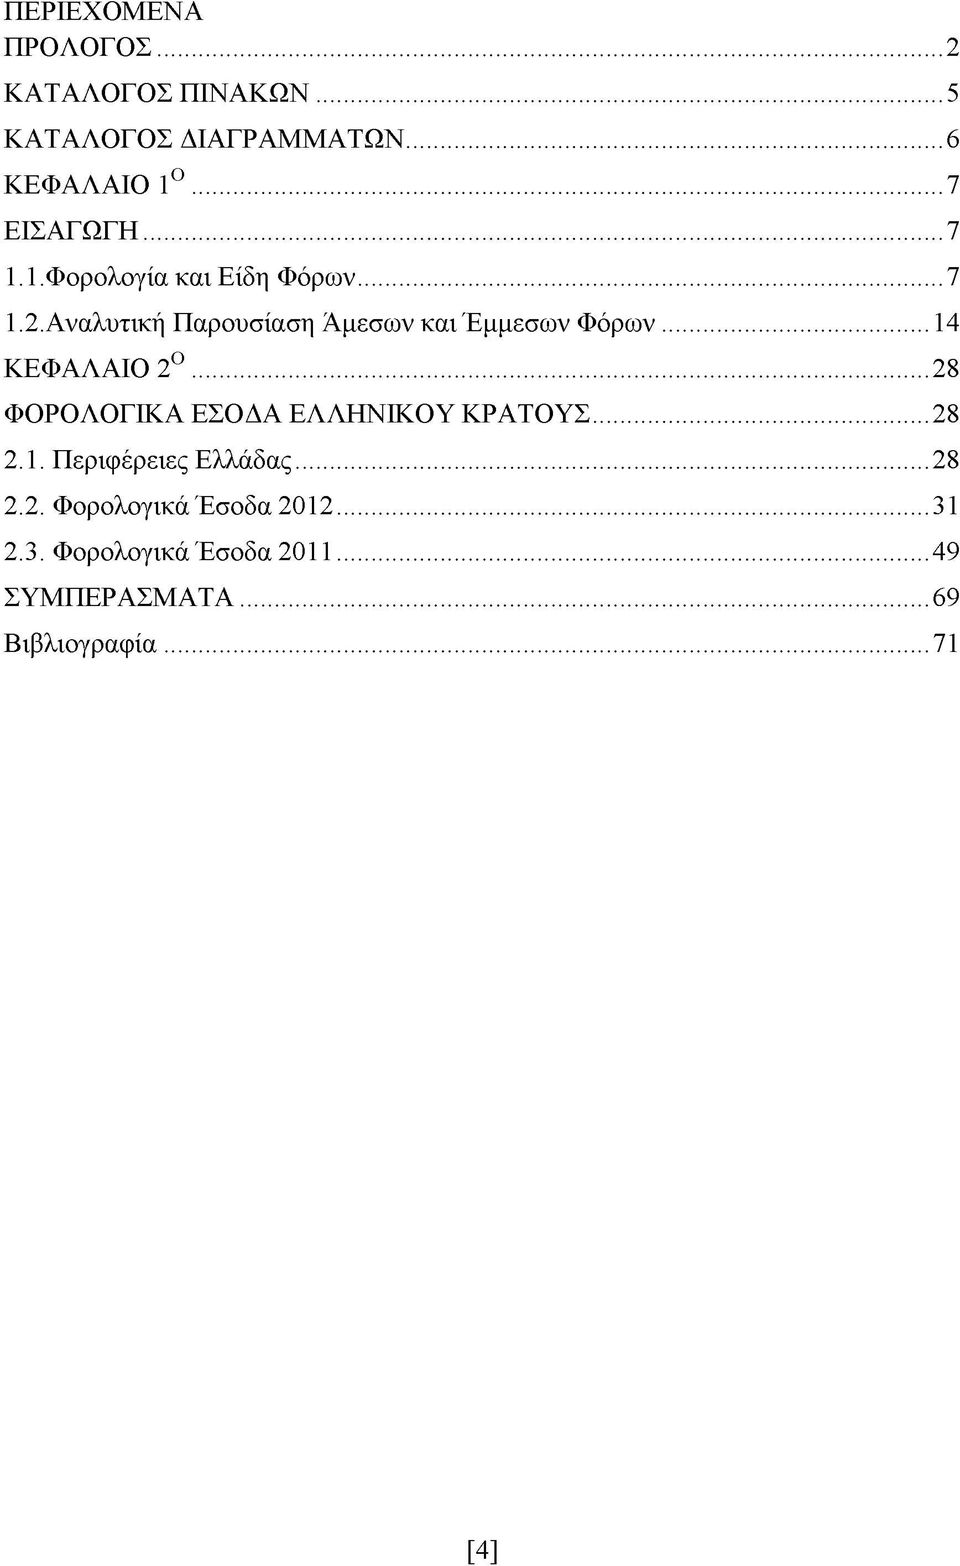 ..14 ΚΕΦΑΛΑΙΟ 2Ο...28 ΦΟΡΟΛΟΓΙΚΑ ΕΣΟΔΑ ΕΛΛΗΝΙΚΟΥ ΚΡΑΤΟΥΣ...28 2.1. Περιφέρειες Ελλάδας...28 2.2. Φορολογικά Έσοδα 2012.